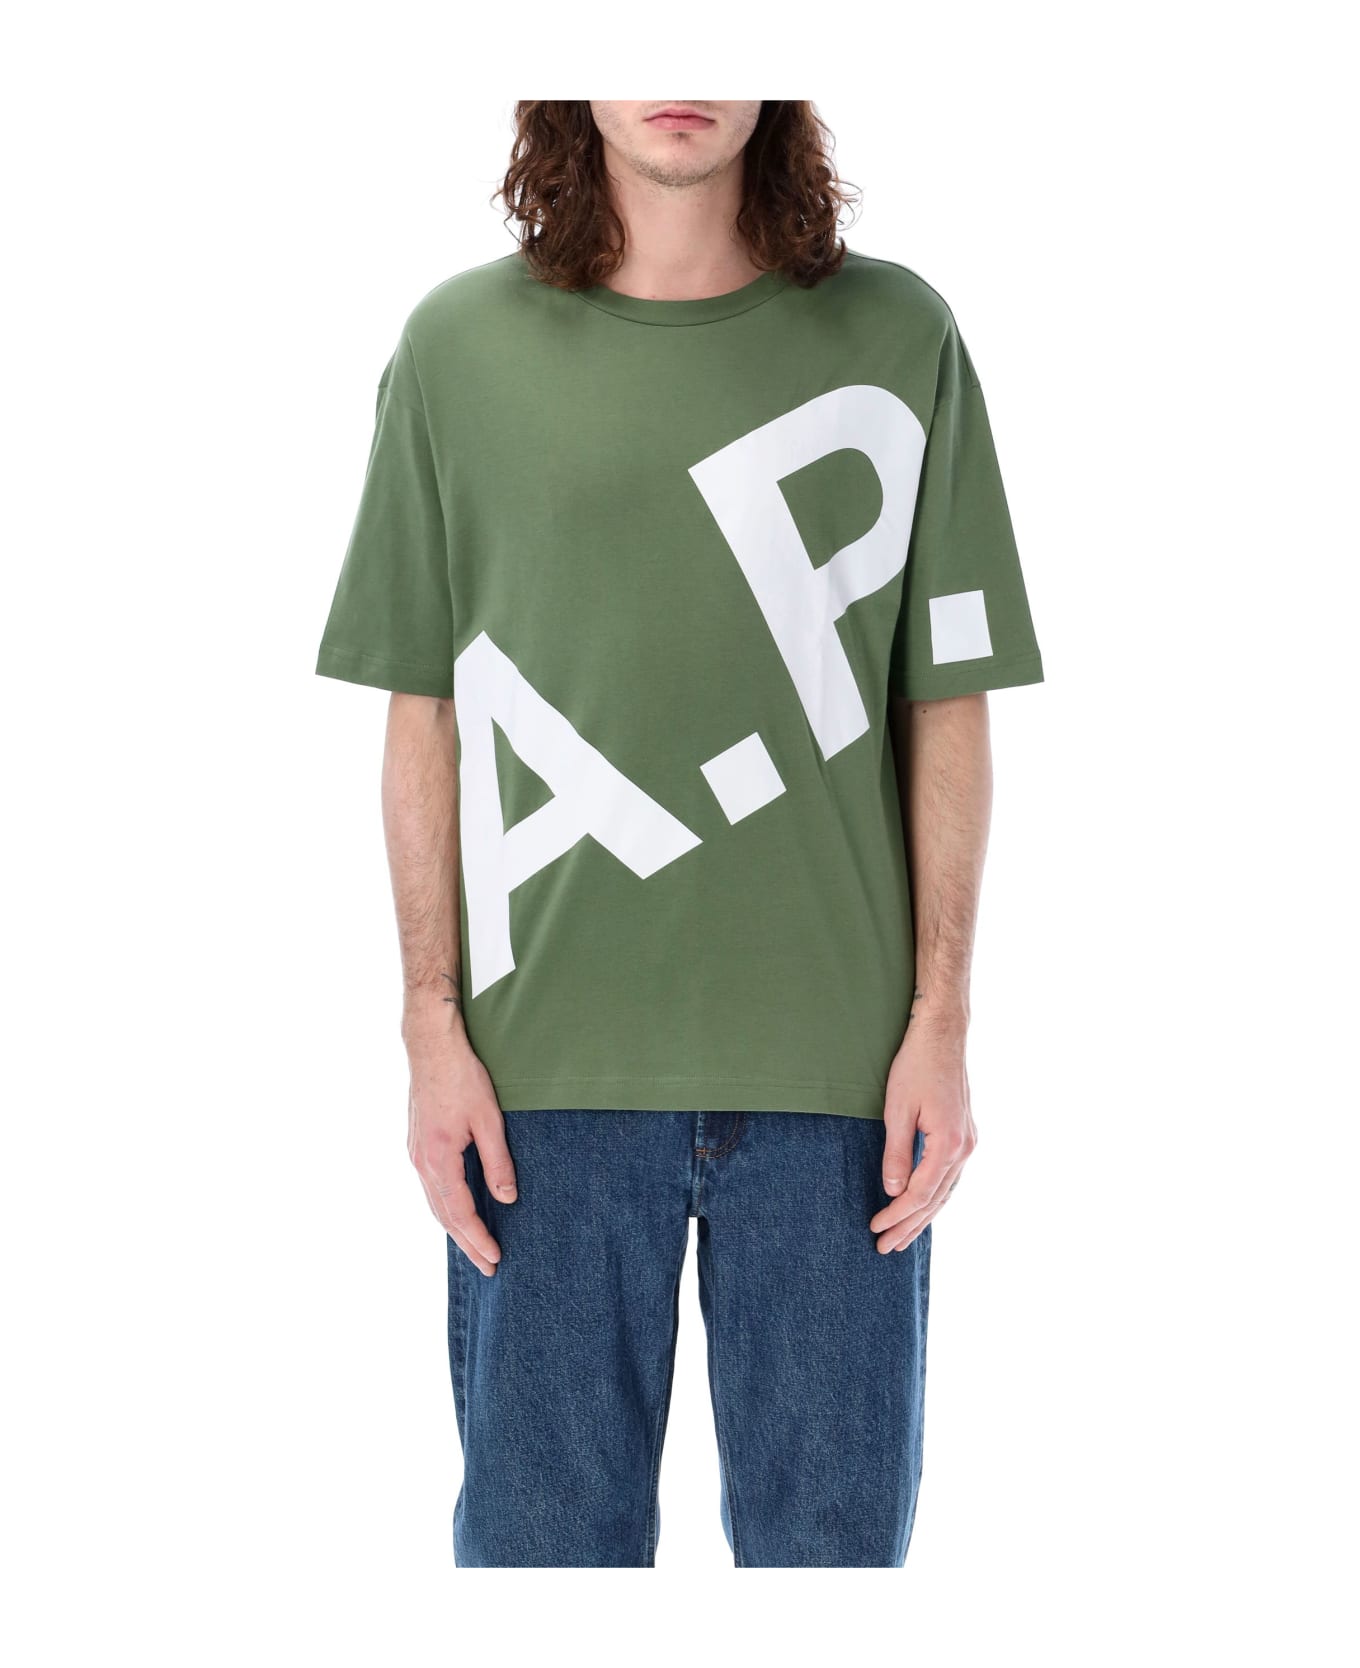 A.P.C. Lisandre T-shirt - GRAY/GREEN